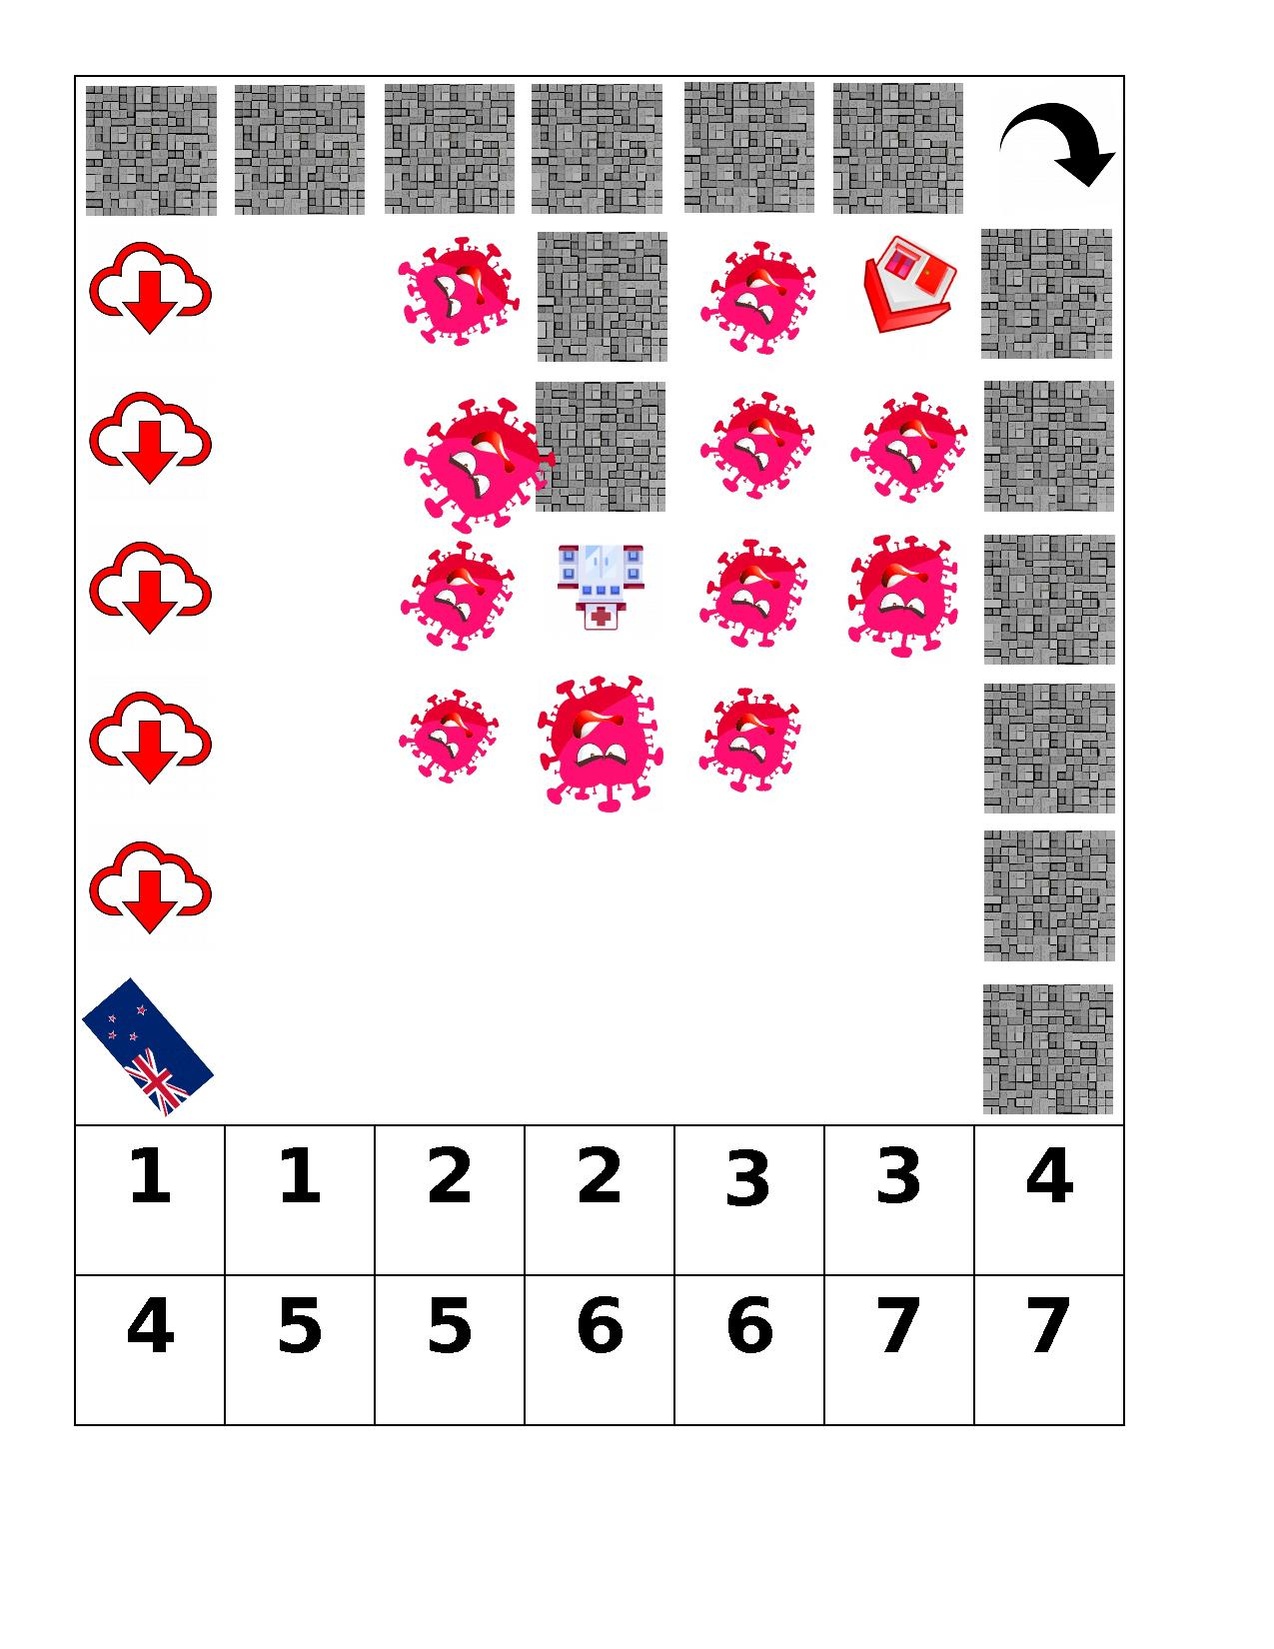 Q-gameboard.pdf